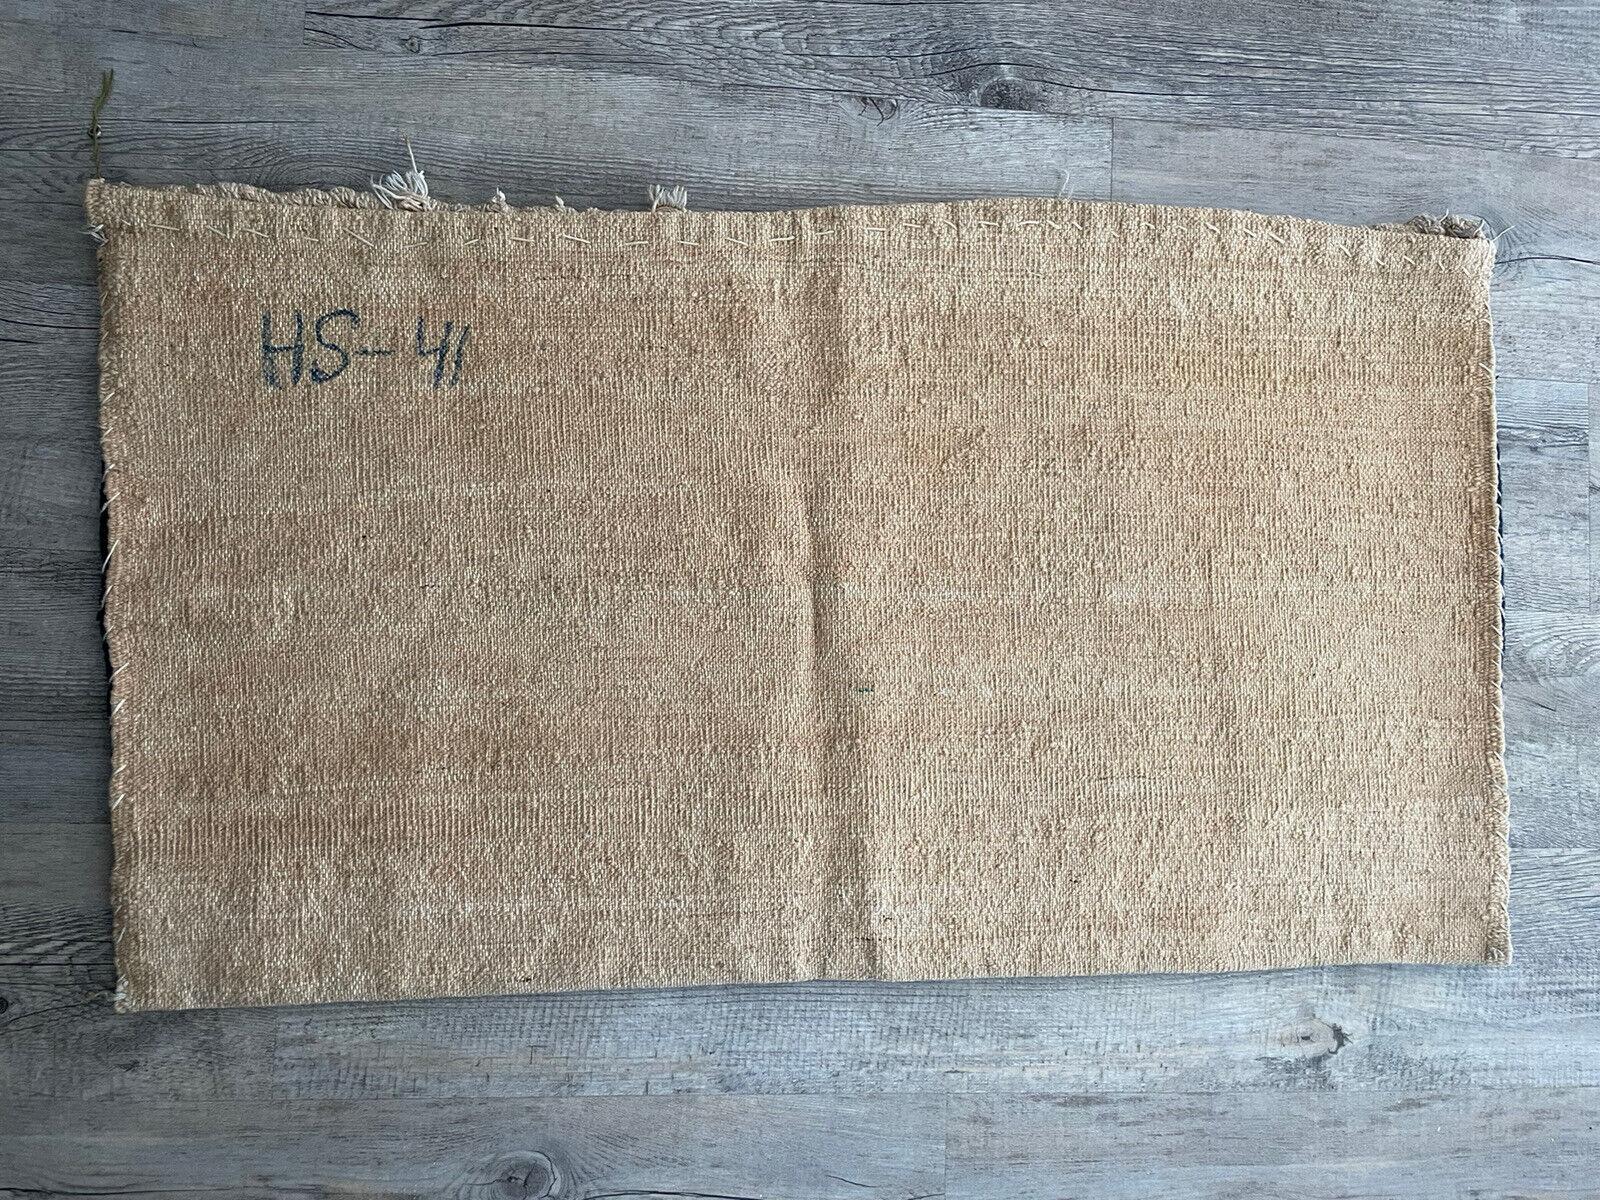 Handgefertigte persische Hamadan-Salztasche aus den 1940er Jahren:

Abmessungen:
Dieser rechteckige Salzsack misst etwa 27 cm (1,3 Fuß) in der Breite und 91 cm (3 Fuß) in der Höhe.
Dank ihrer kompakten Größe ist sie vielseitig einsetzbar, ob als